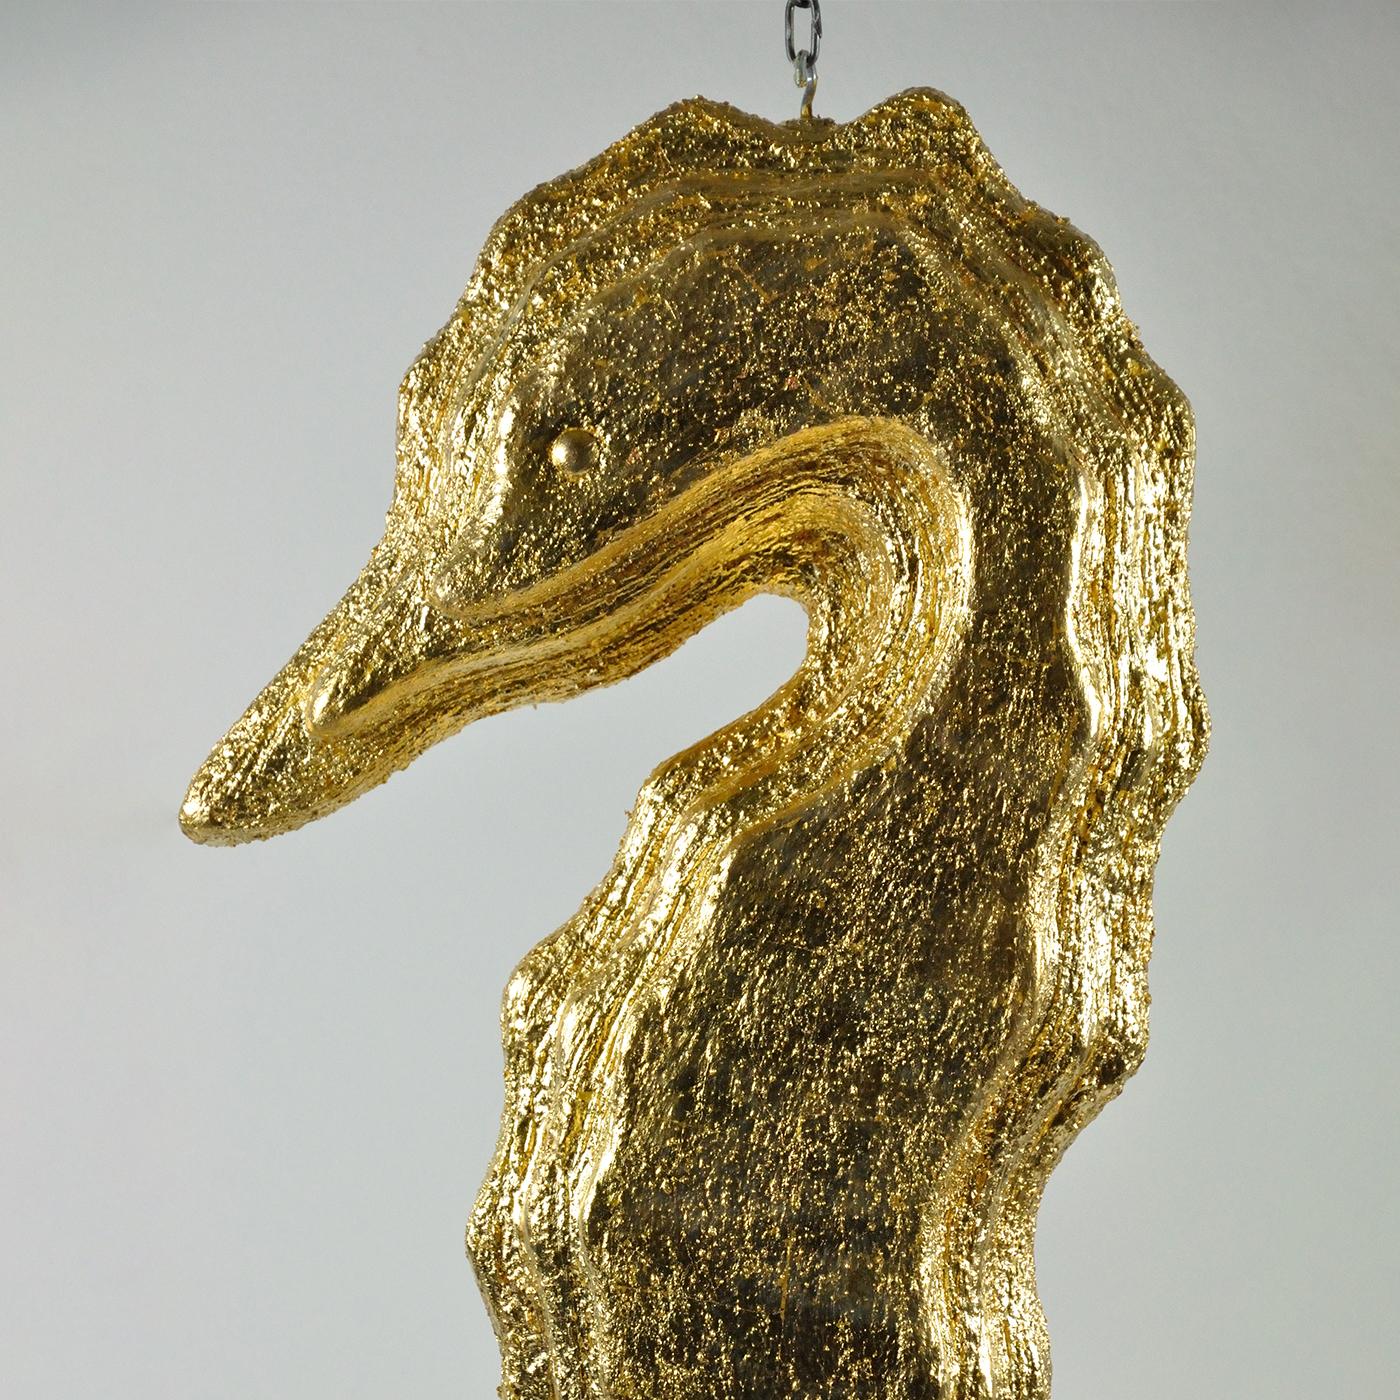 Diese exklusive und einzigartige Skulptur mit ihrem faszinierenden Design, bei dem das Seepferdchen an einem robusten, freistehenden Rahmen aus rohem Eisen baumelt, ist ein großartiges Stück, das in luxuriösen Küstendekorationen den Mittelpunkt